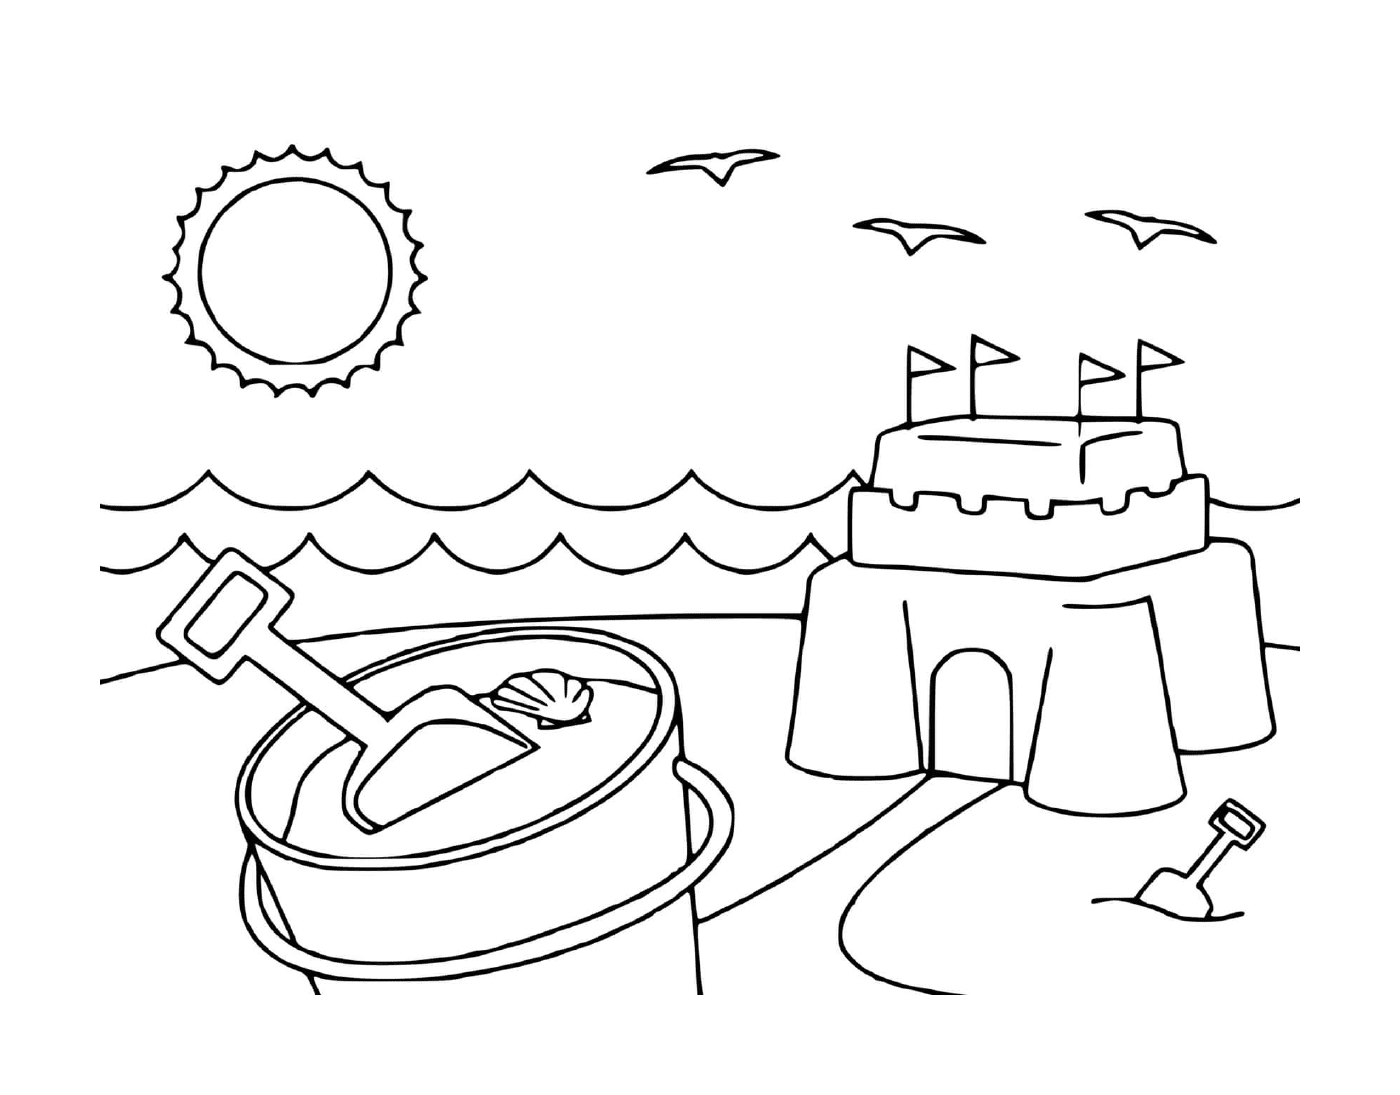  Castello di sabbia sulla spiaggia 